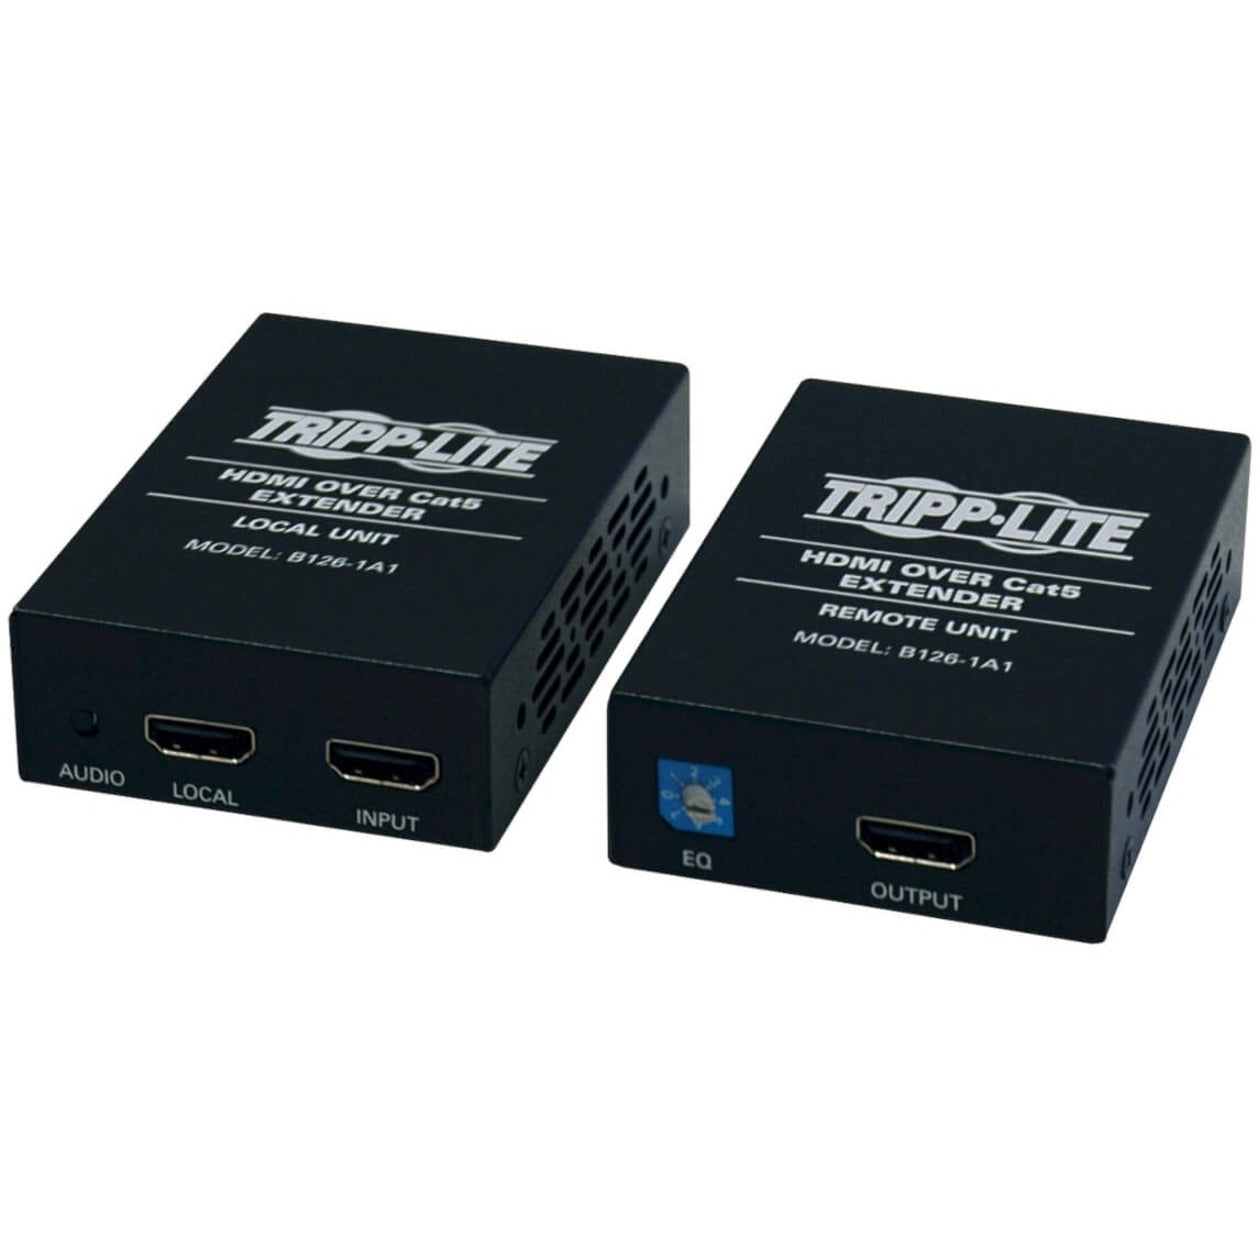 تريب لايت موسع الفيديو/الكونسول B126-1A1، جهاز إرسال/استقبال HDMI، مدى 150 قدم، متوافق مع TAA